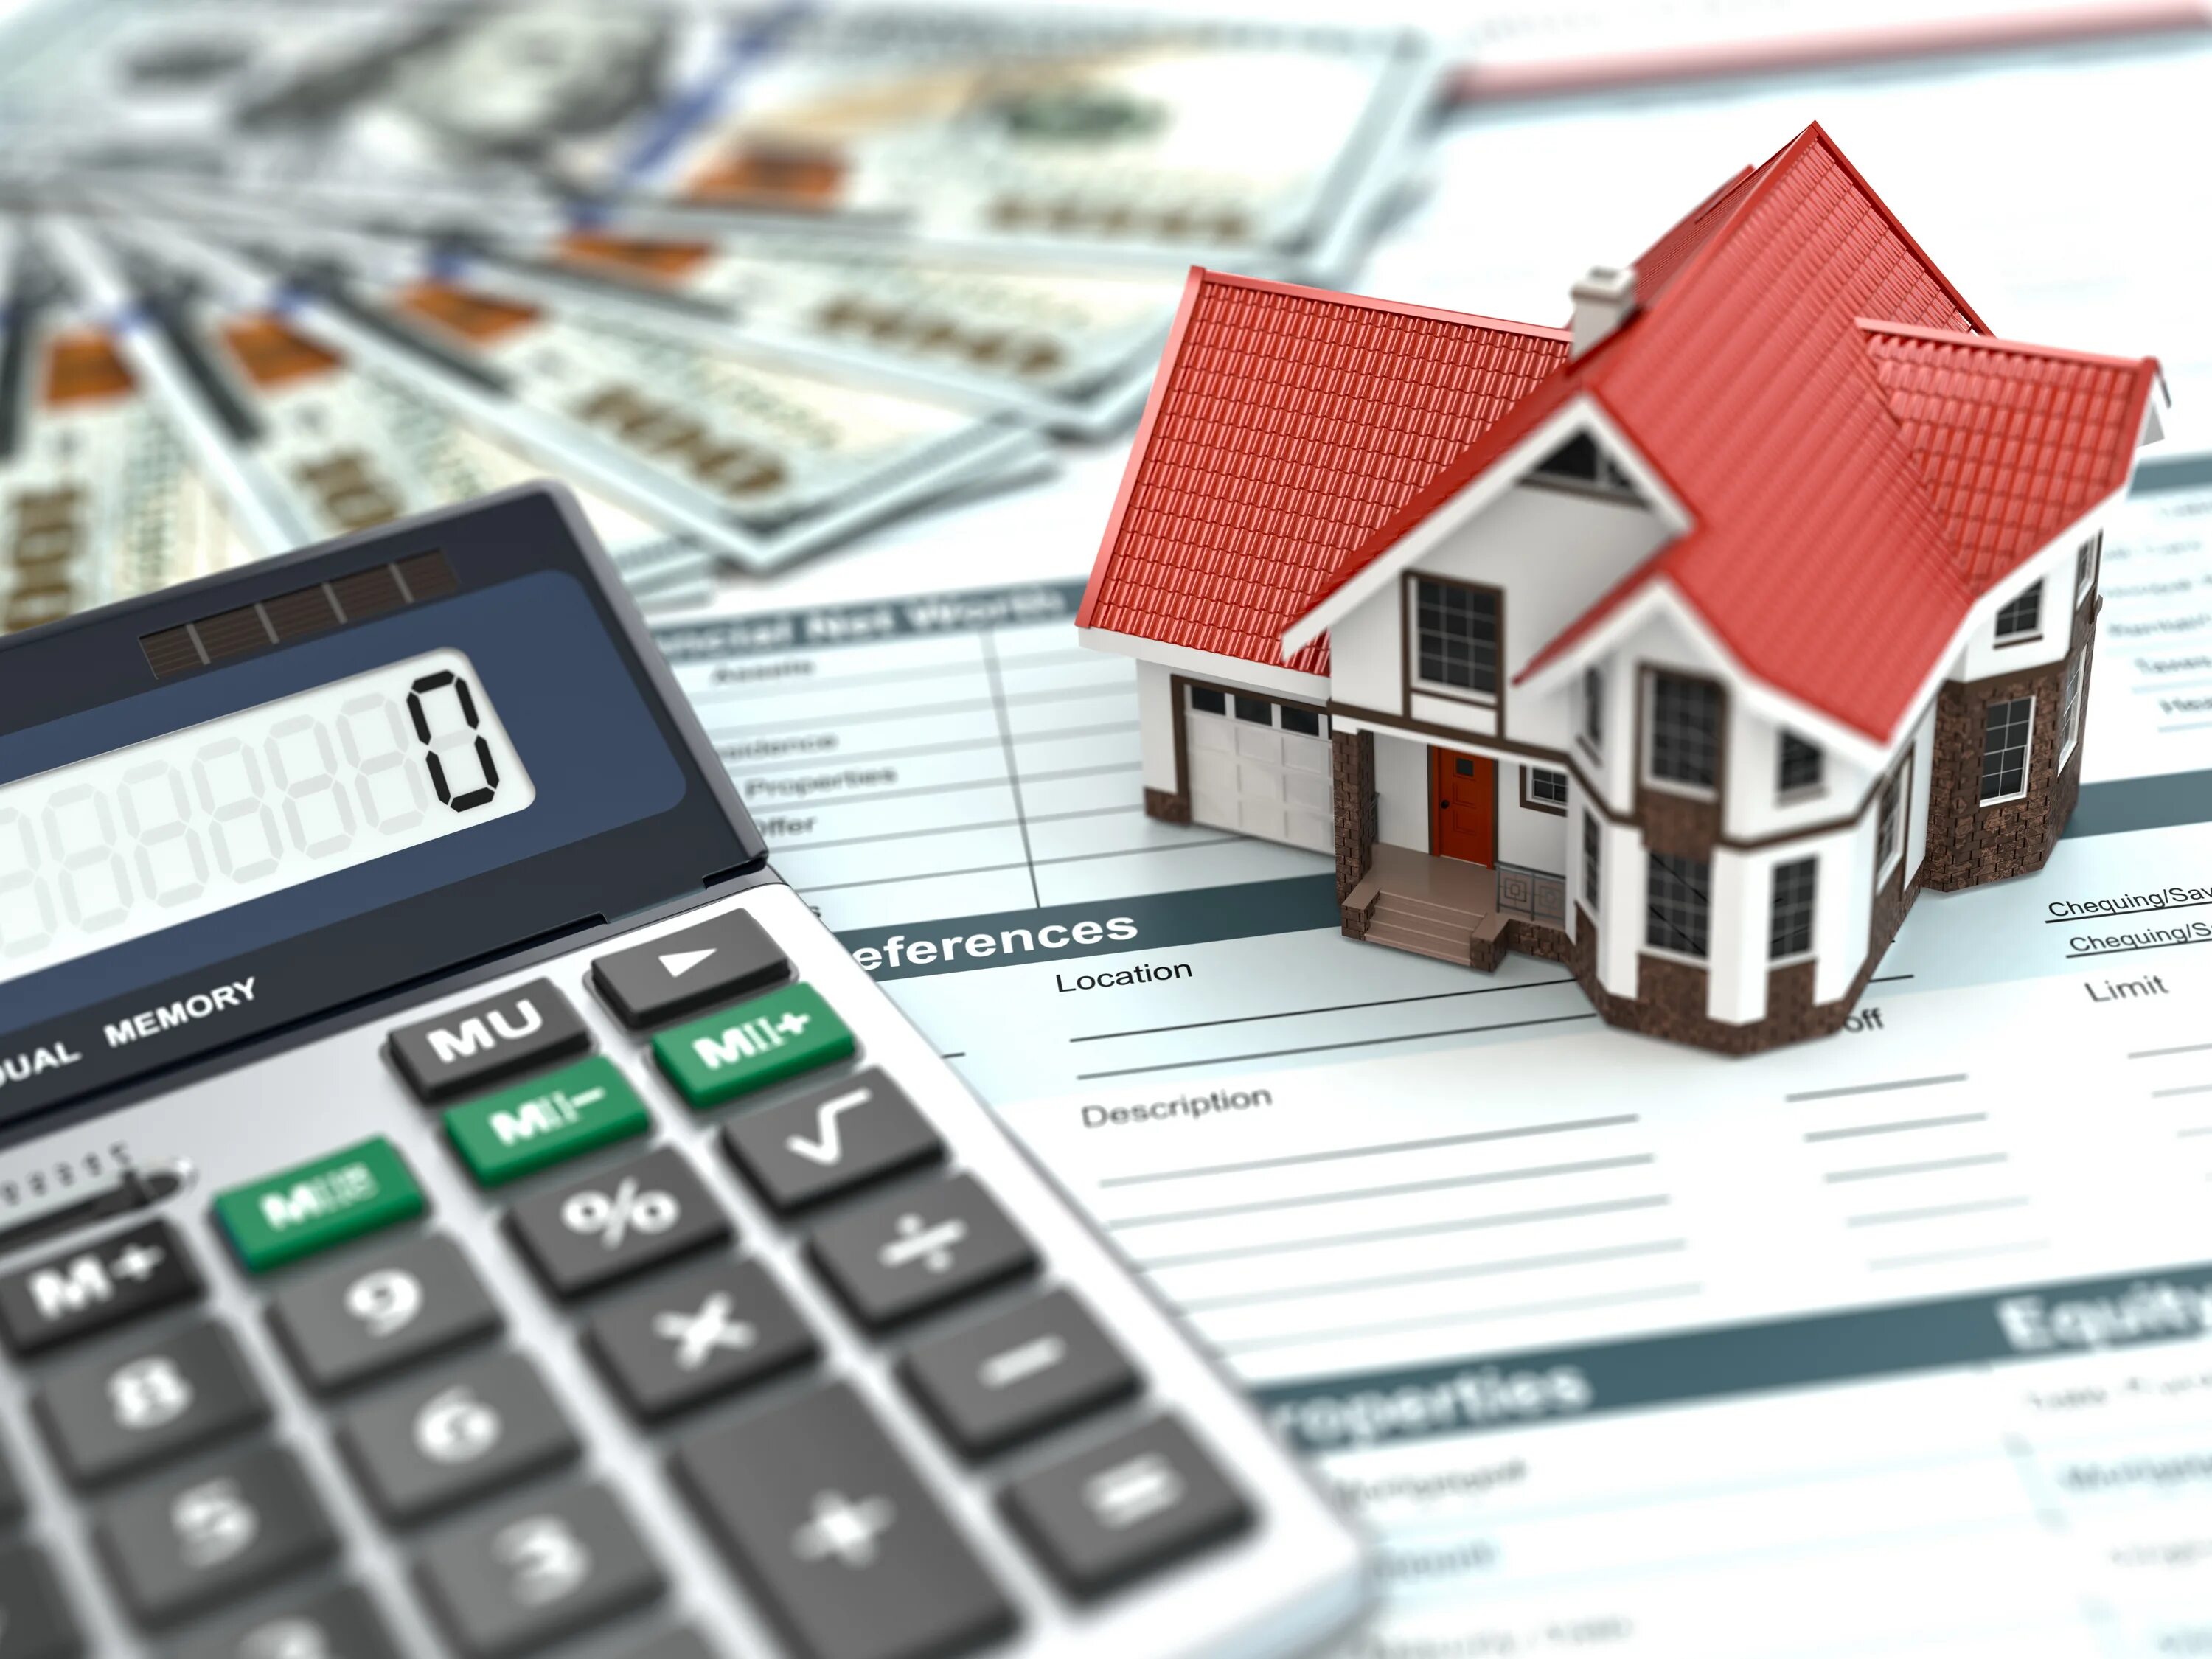 Дом калькулятор. Налог на недвижимость. Оценка недвижимости. Ипотечное кредитование. Налоговая аренда налог